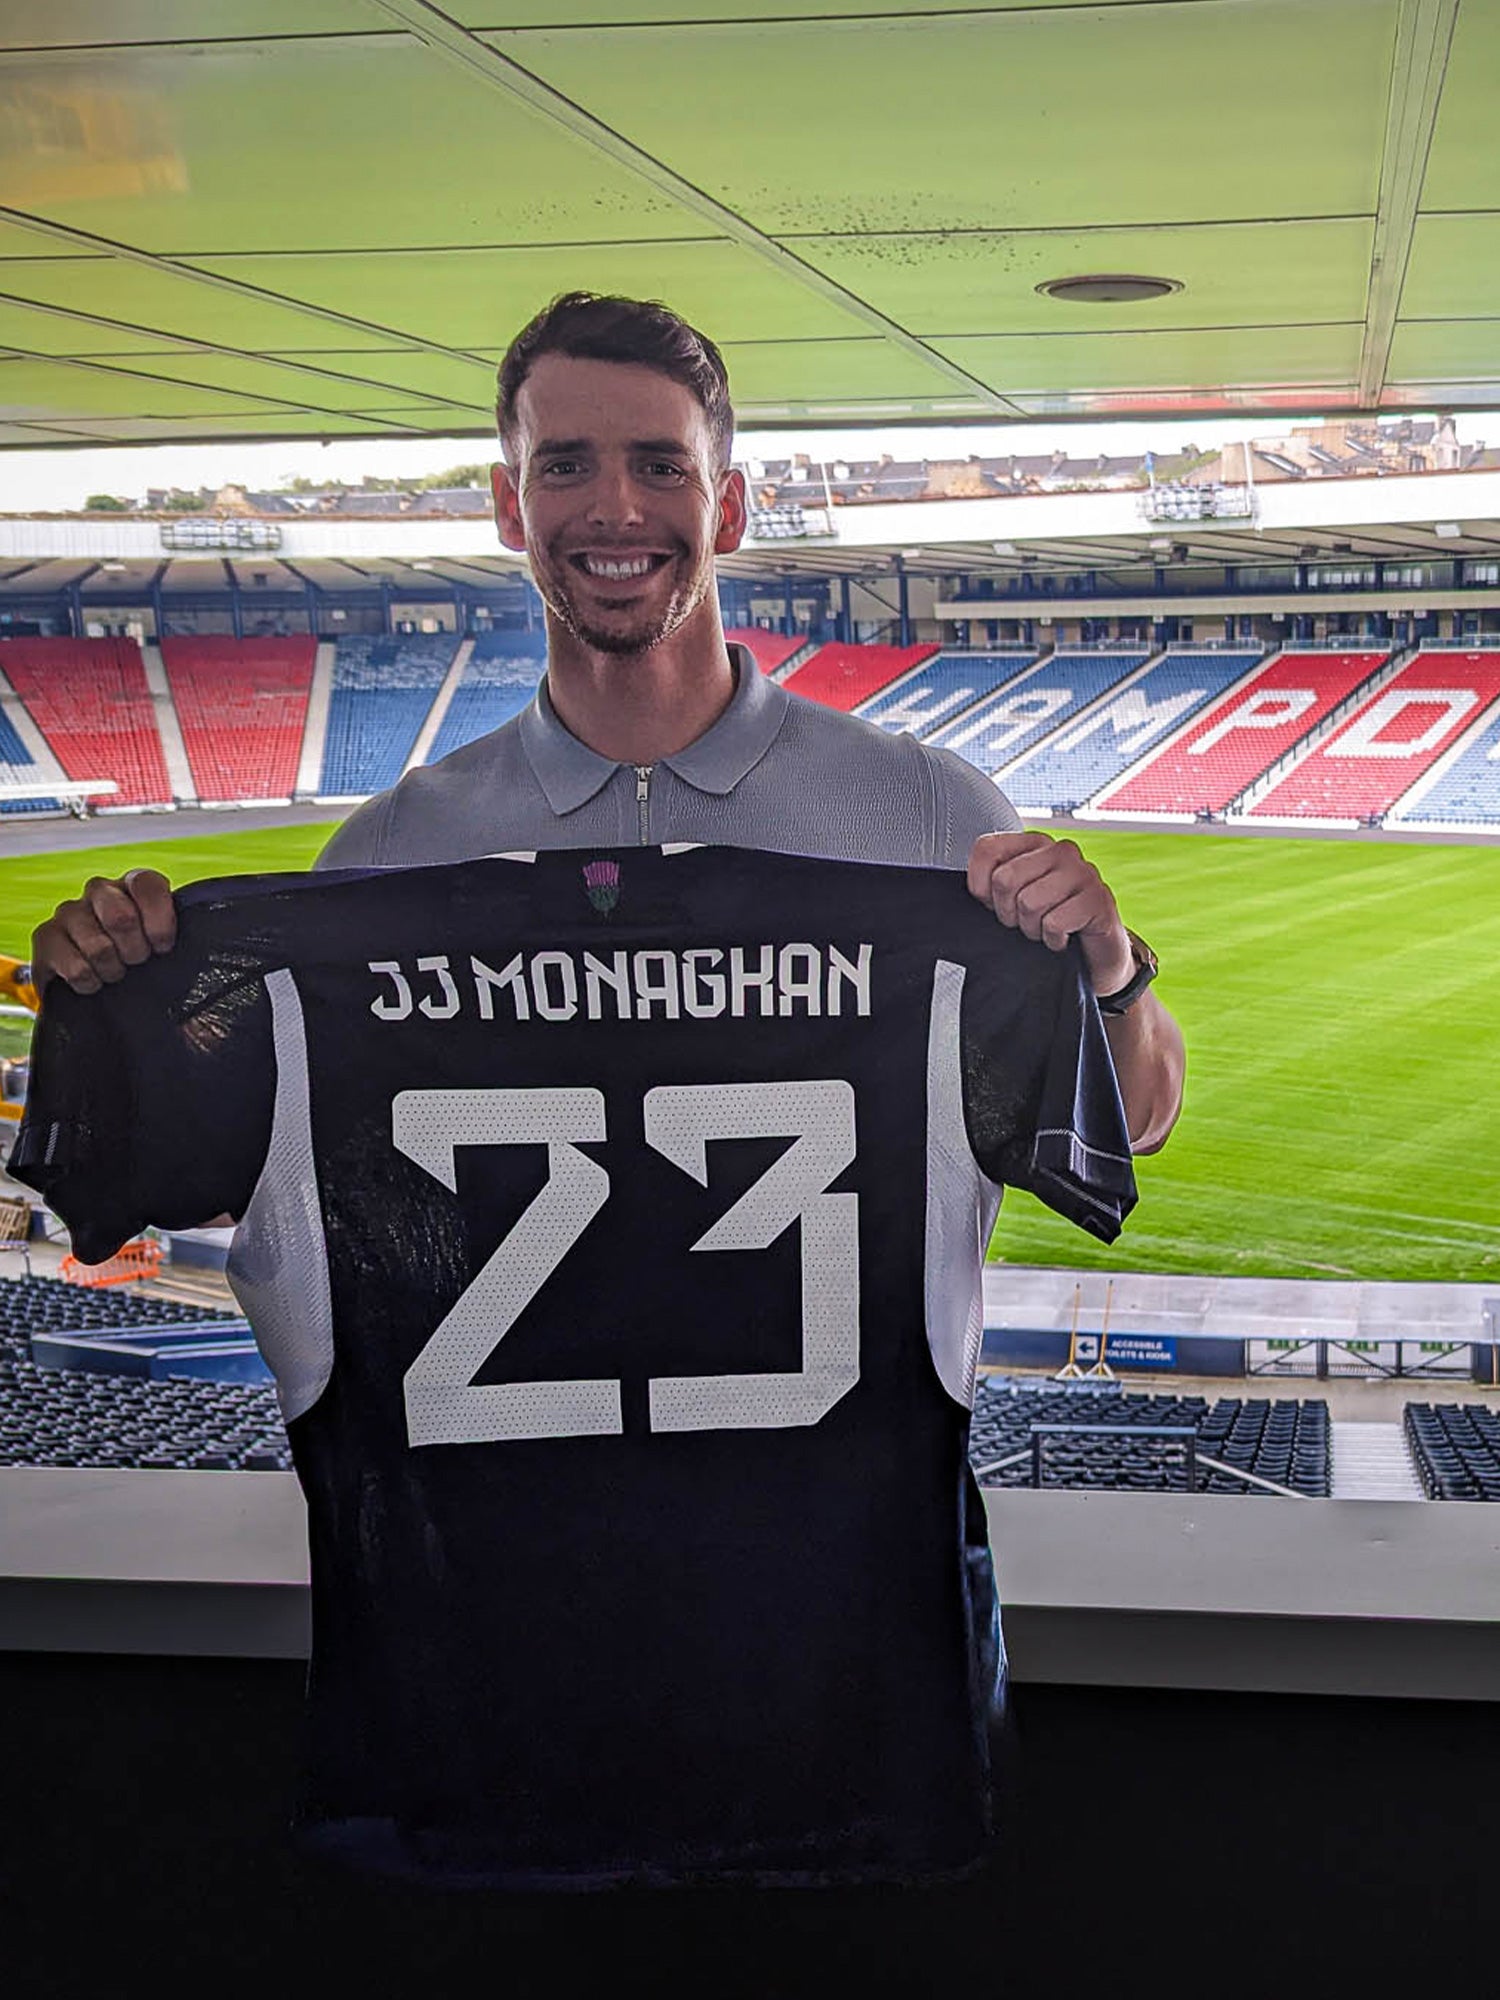 Scotland NT x JJ Monaghan